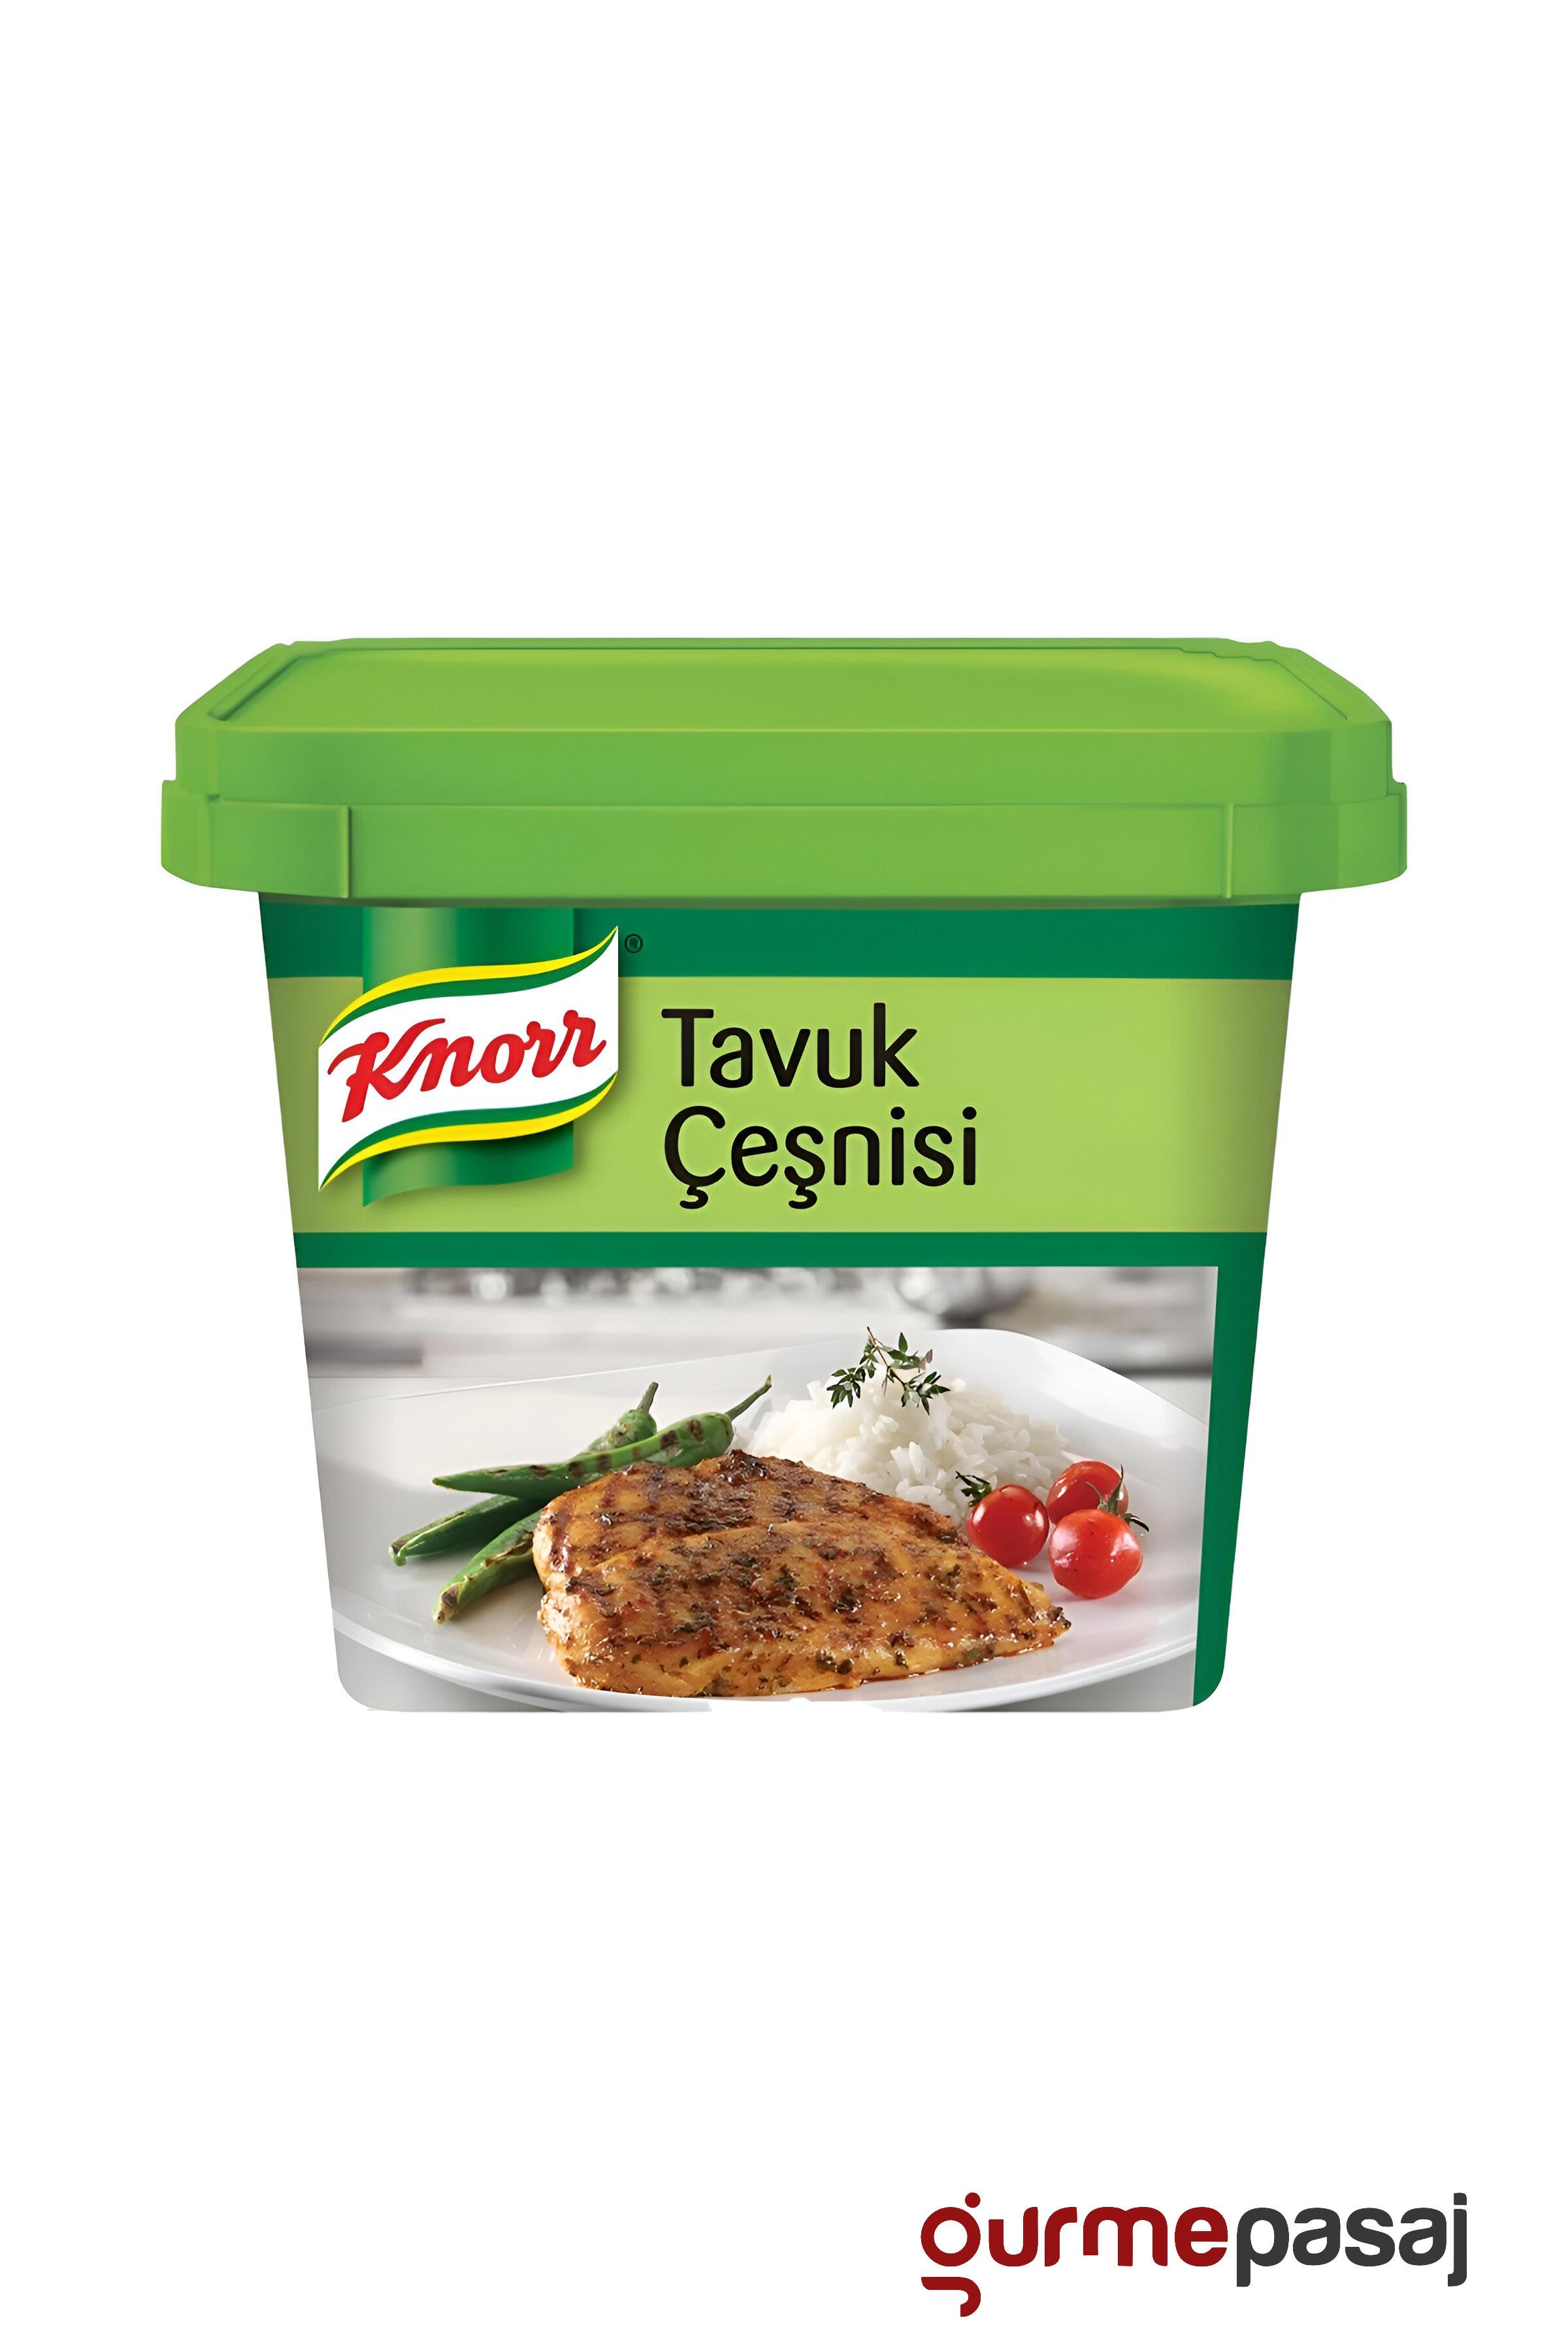 Knorr Tavuk Çeşni 750 G